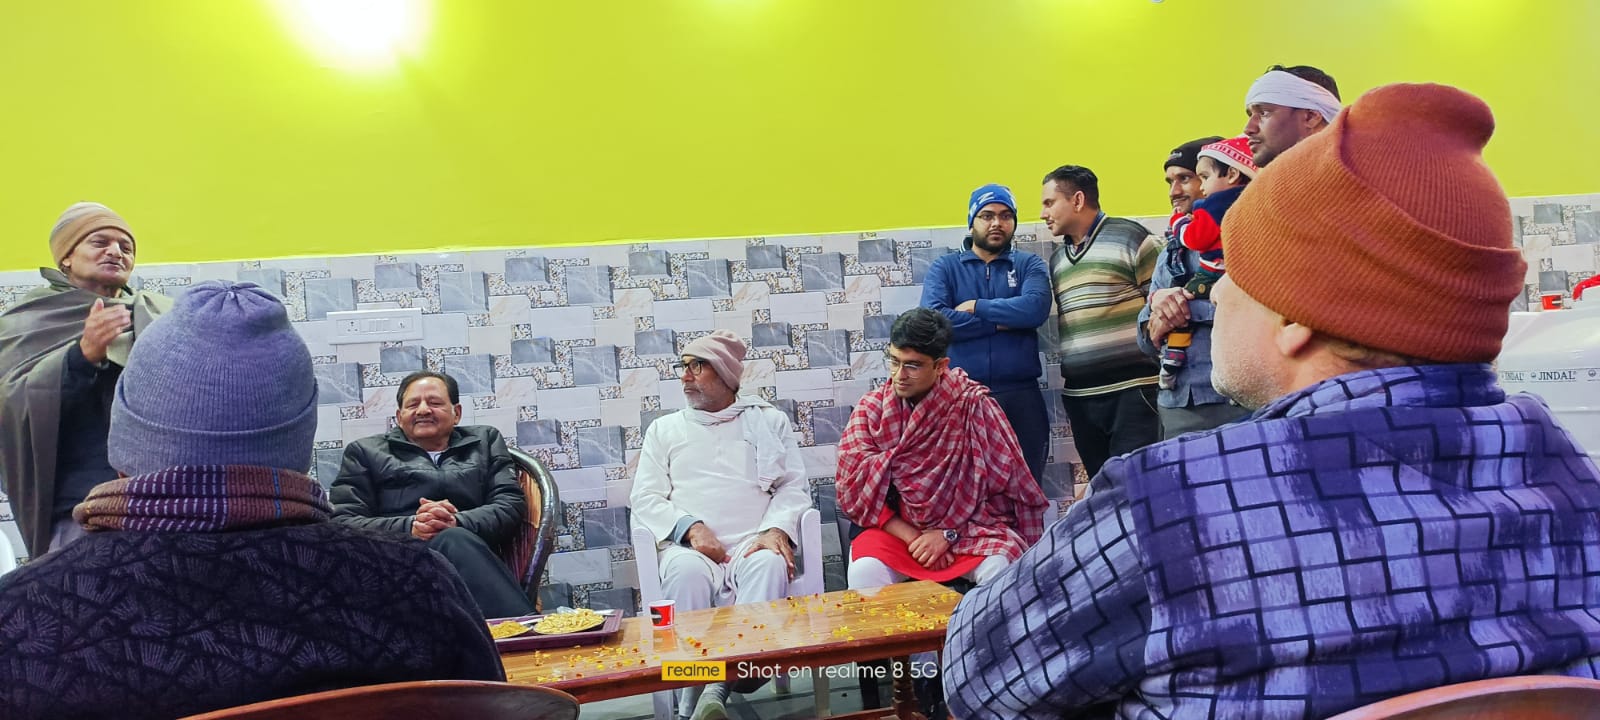 मेयर आशा शर्मा के पति के के शर्मा द्वारा भारतीय जनता पार्टी के विधायक प्रत्याशी अतुल गर्ग जी के पक्ष में मुकुल शर्मा एडवोकेट के आवास पर बैठक का आयोजन किया गया